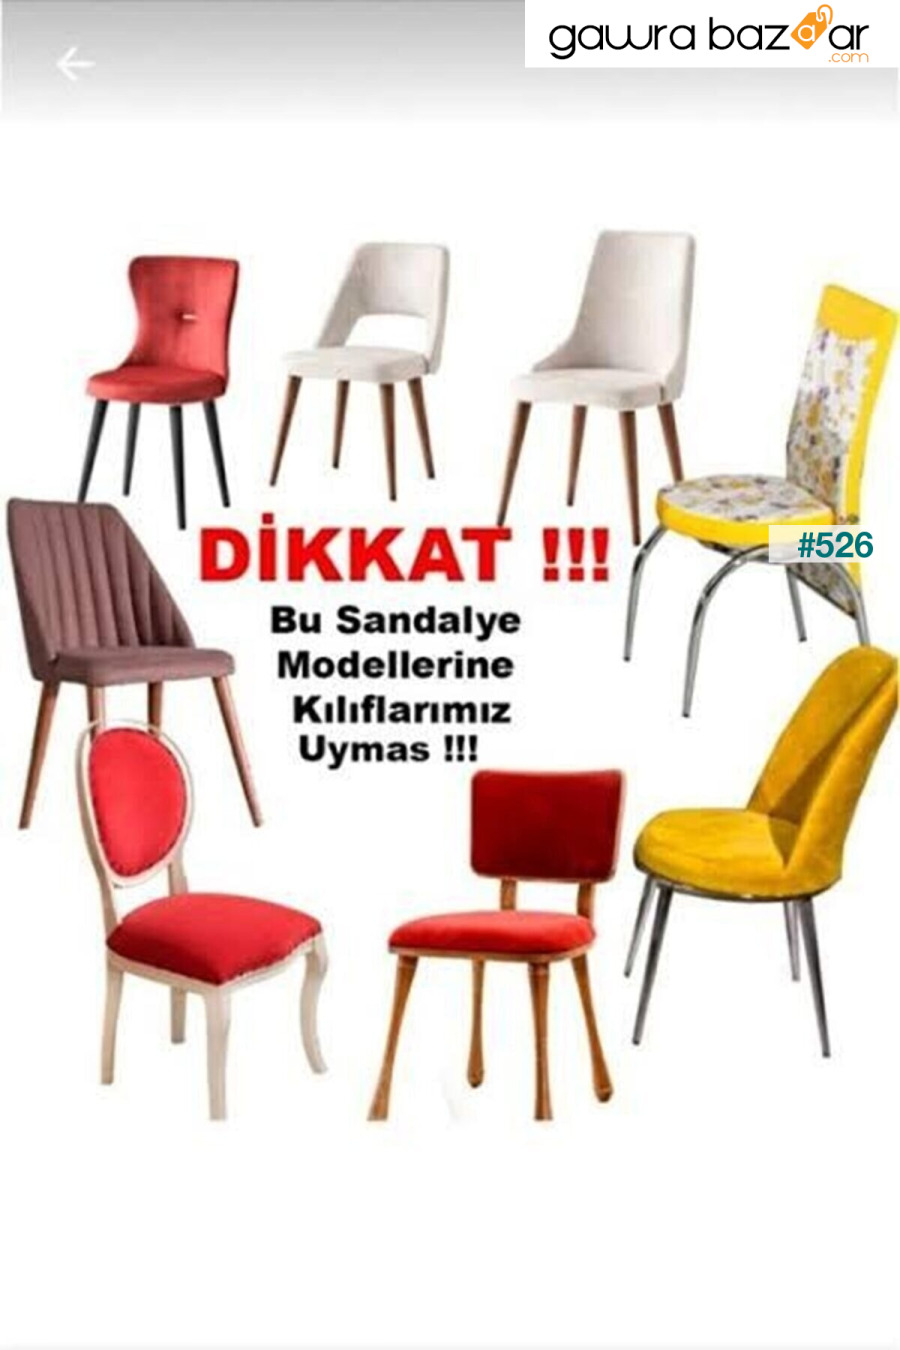 غطاء كرسي عالي الجودة ، ليكرا ، قابل للغسل ، قطعة واحدة لون منك [# 4] ÖZMAKAN 5